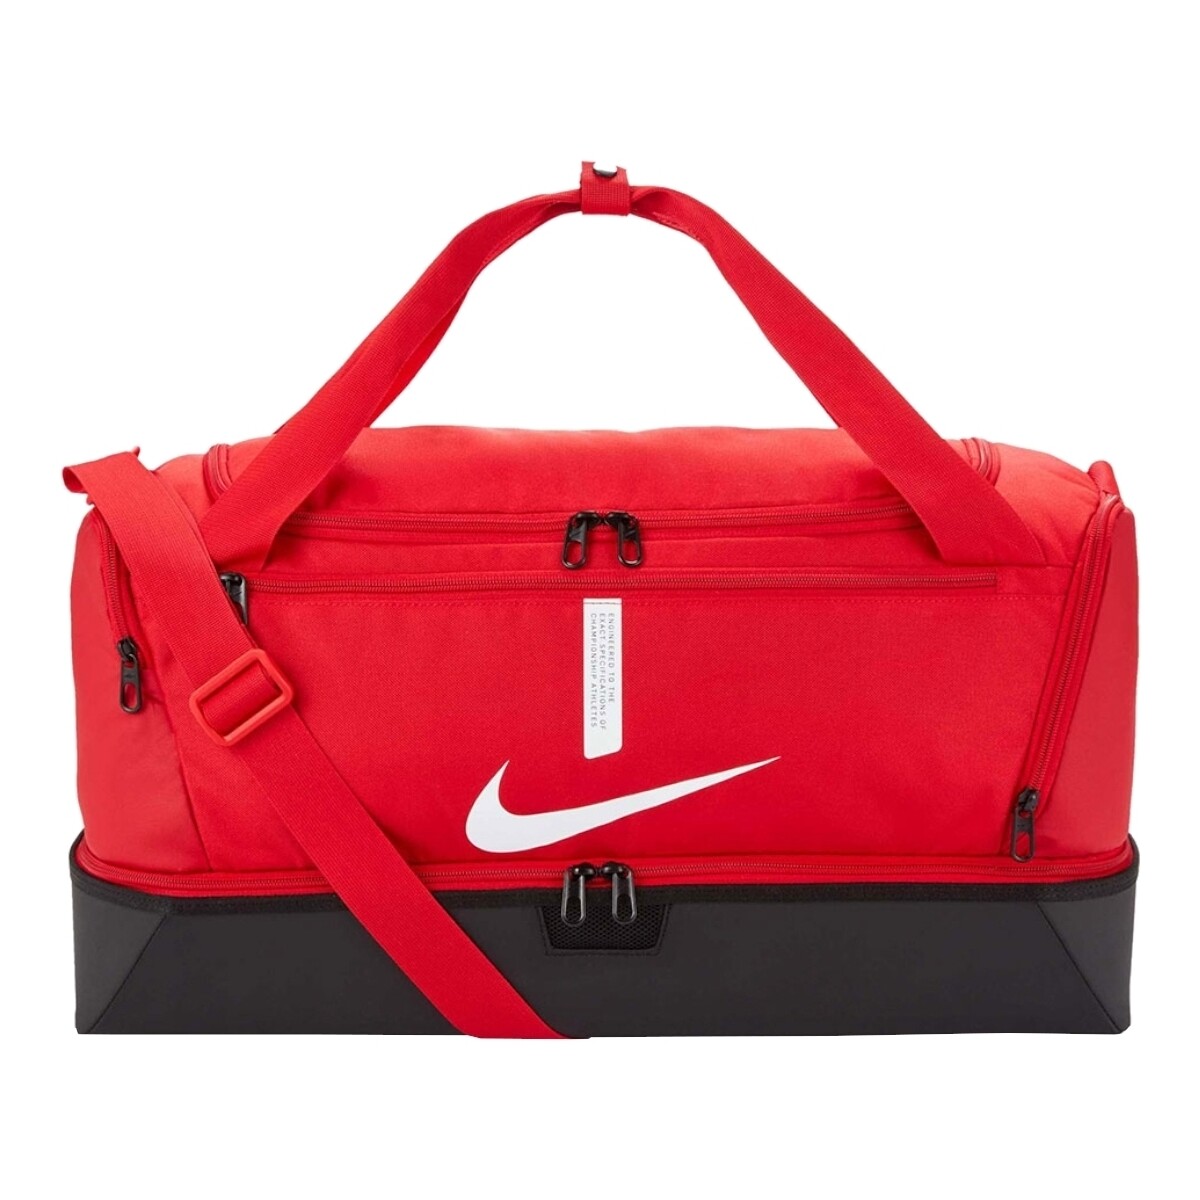 Τσάντες Αθλητικές τσάντες Nike Academy Team M Red